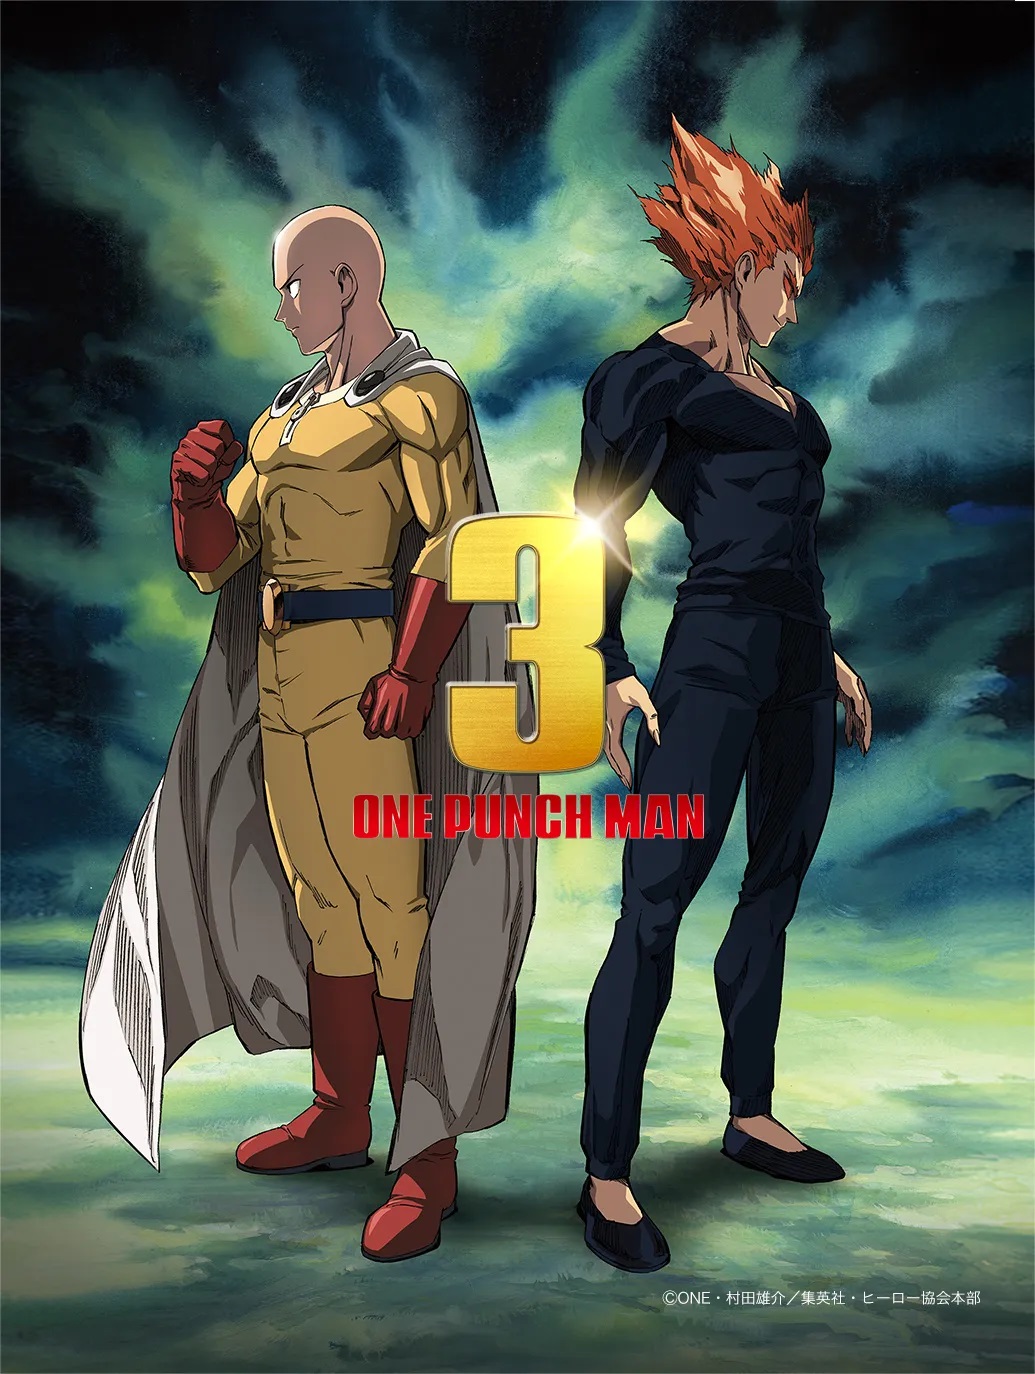 One Punch Man Season 3 Anime được công bố